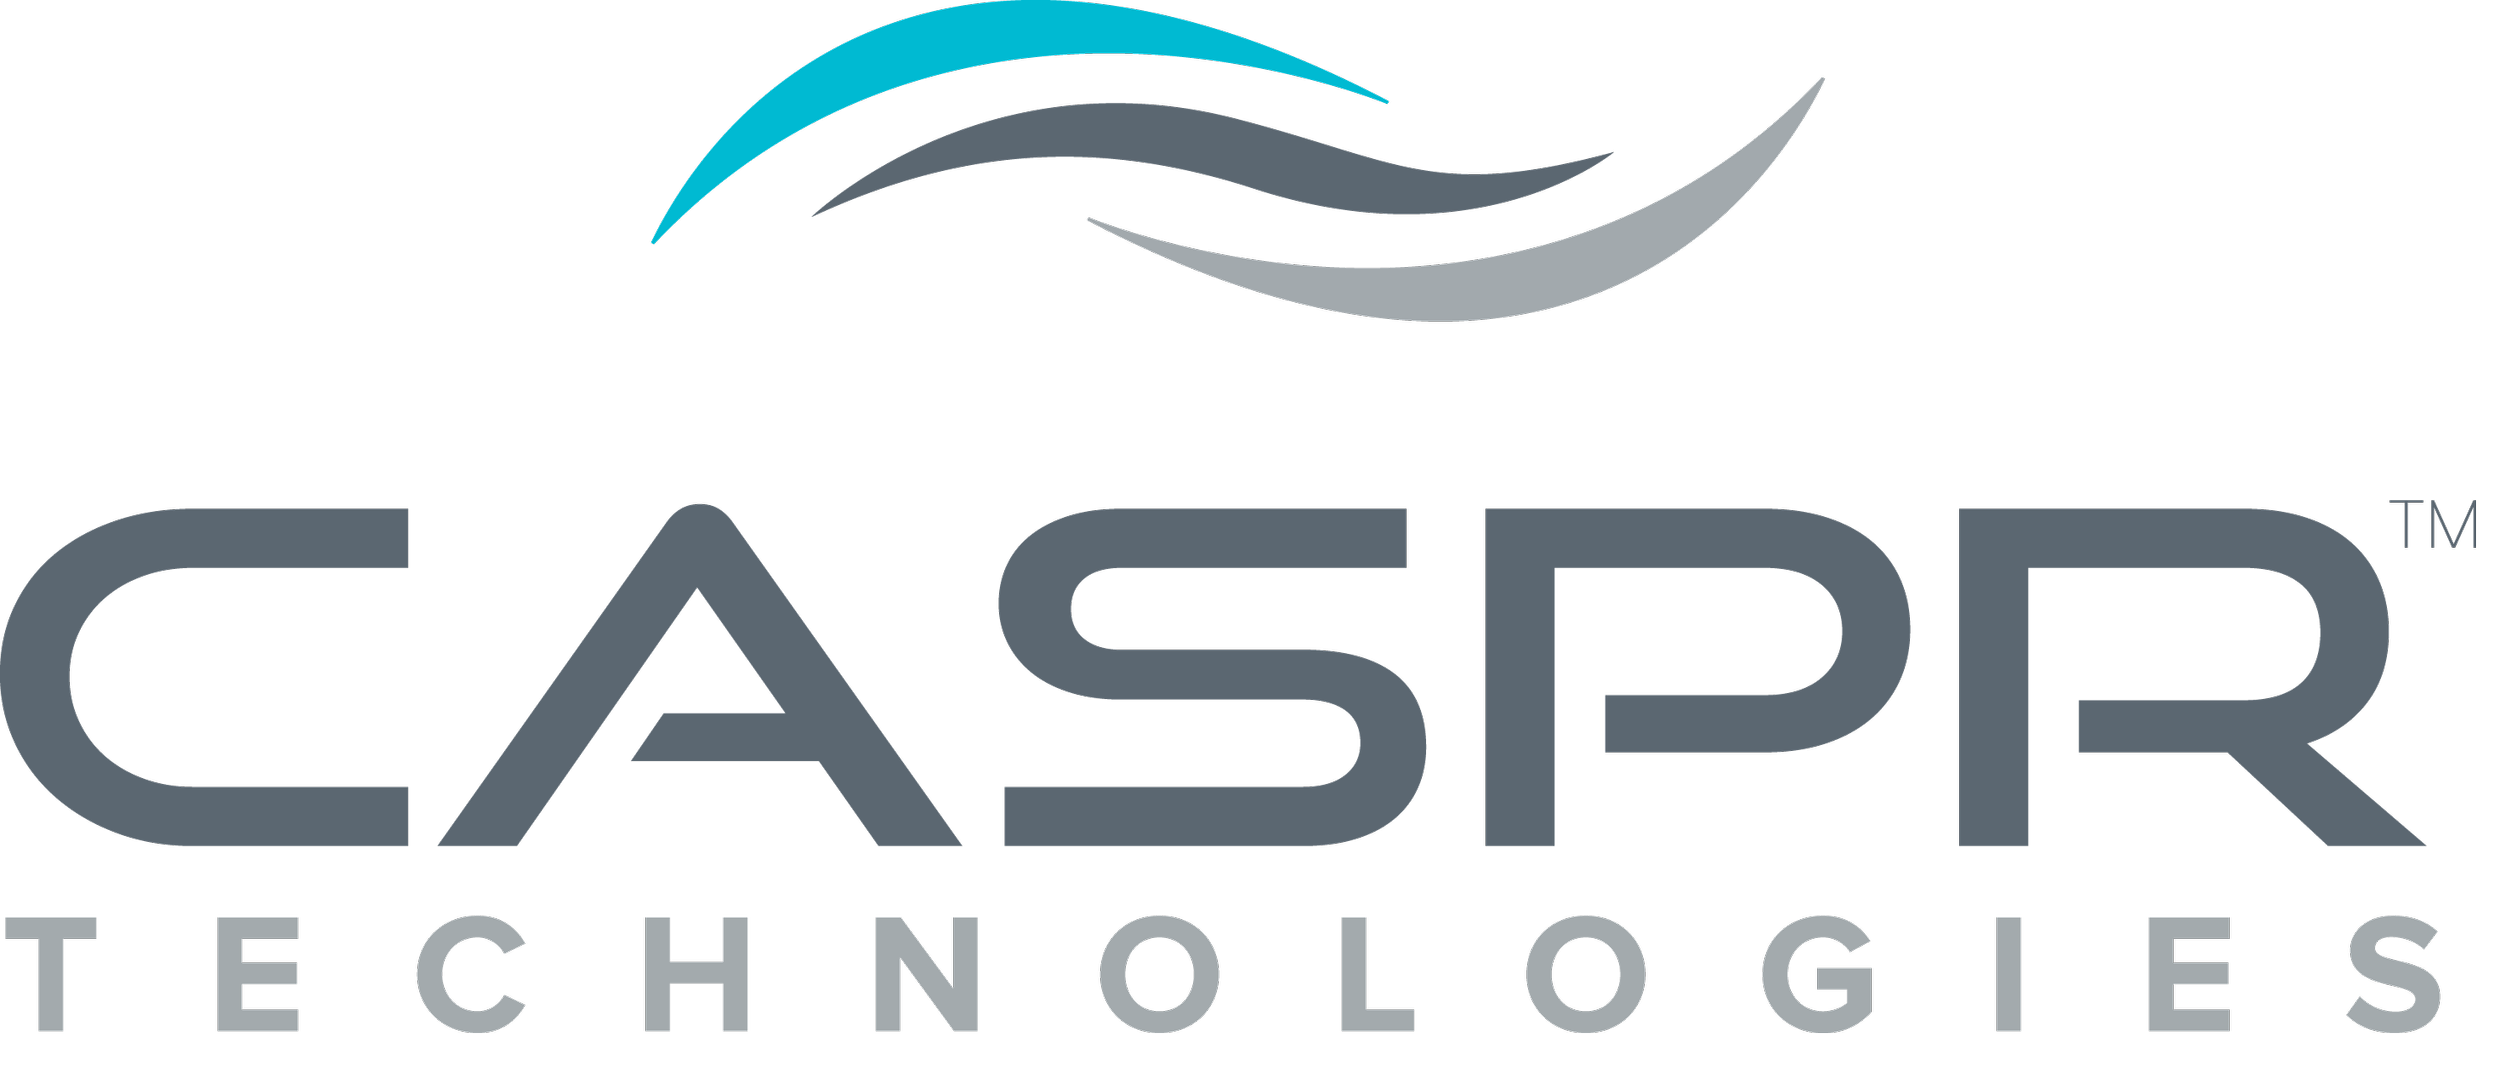 CASPRTechnologies-TechnologyIn-19930615_CASPR_Technologies_Logo_-_Transparent_Background.png